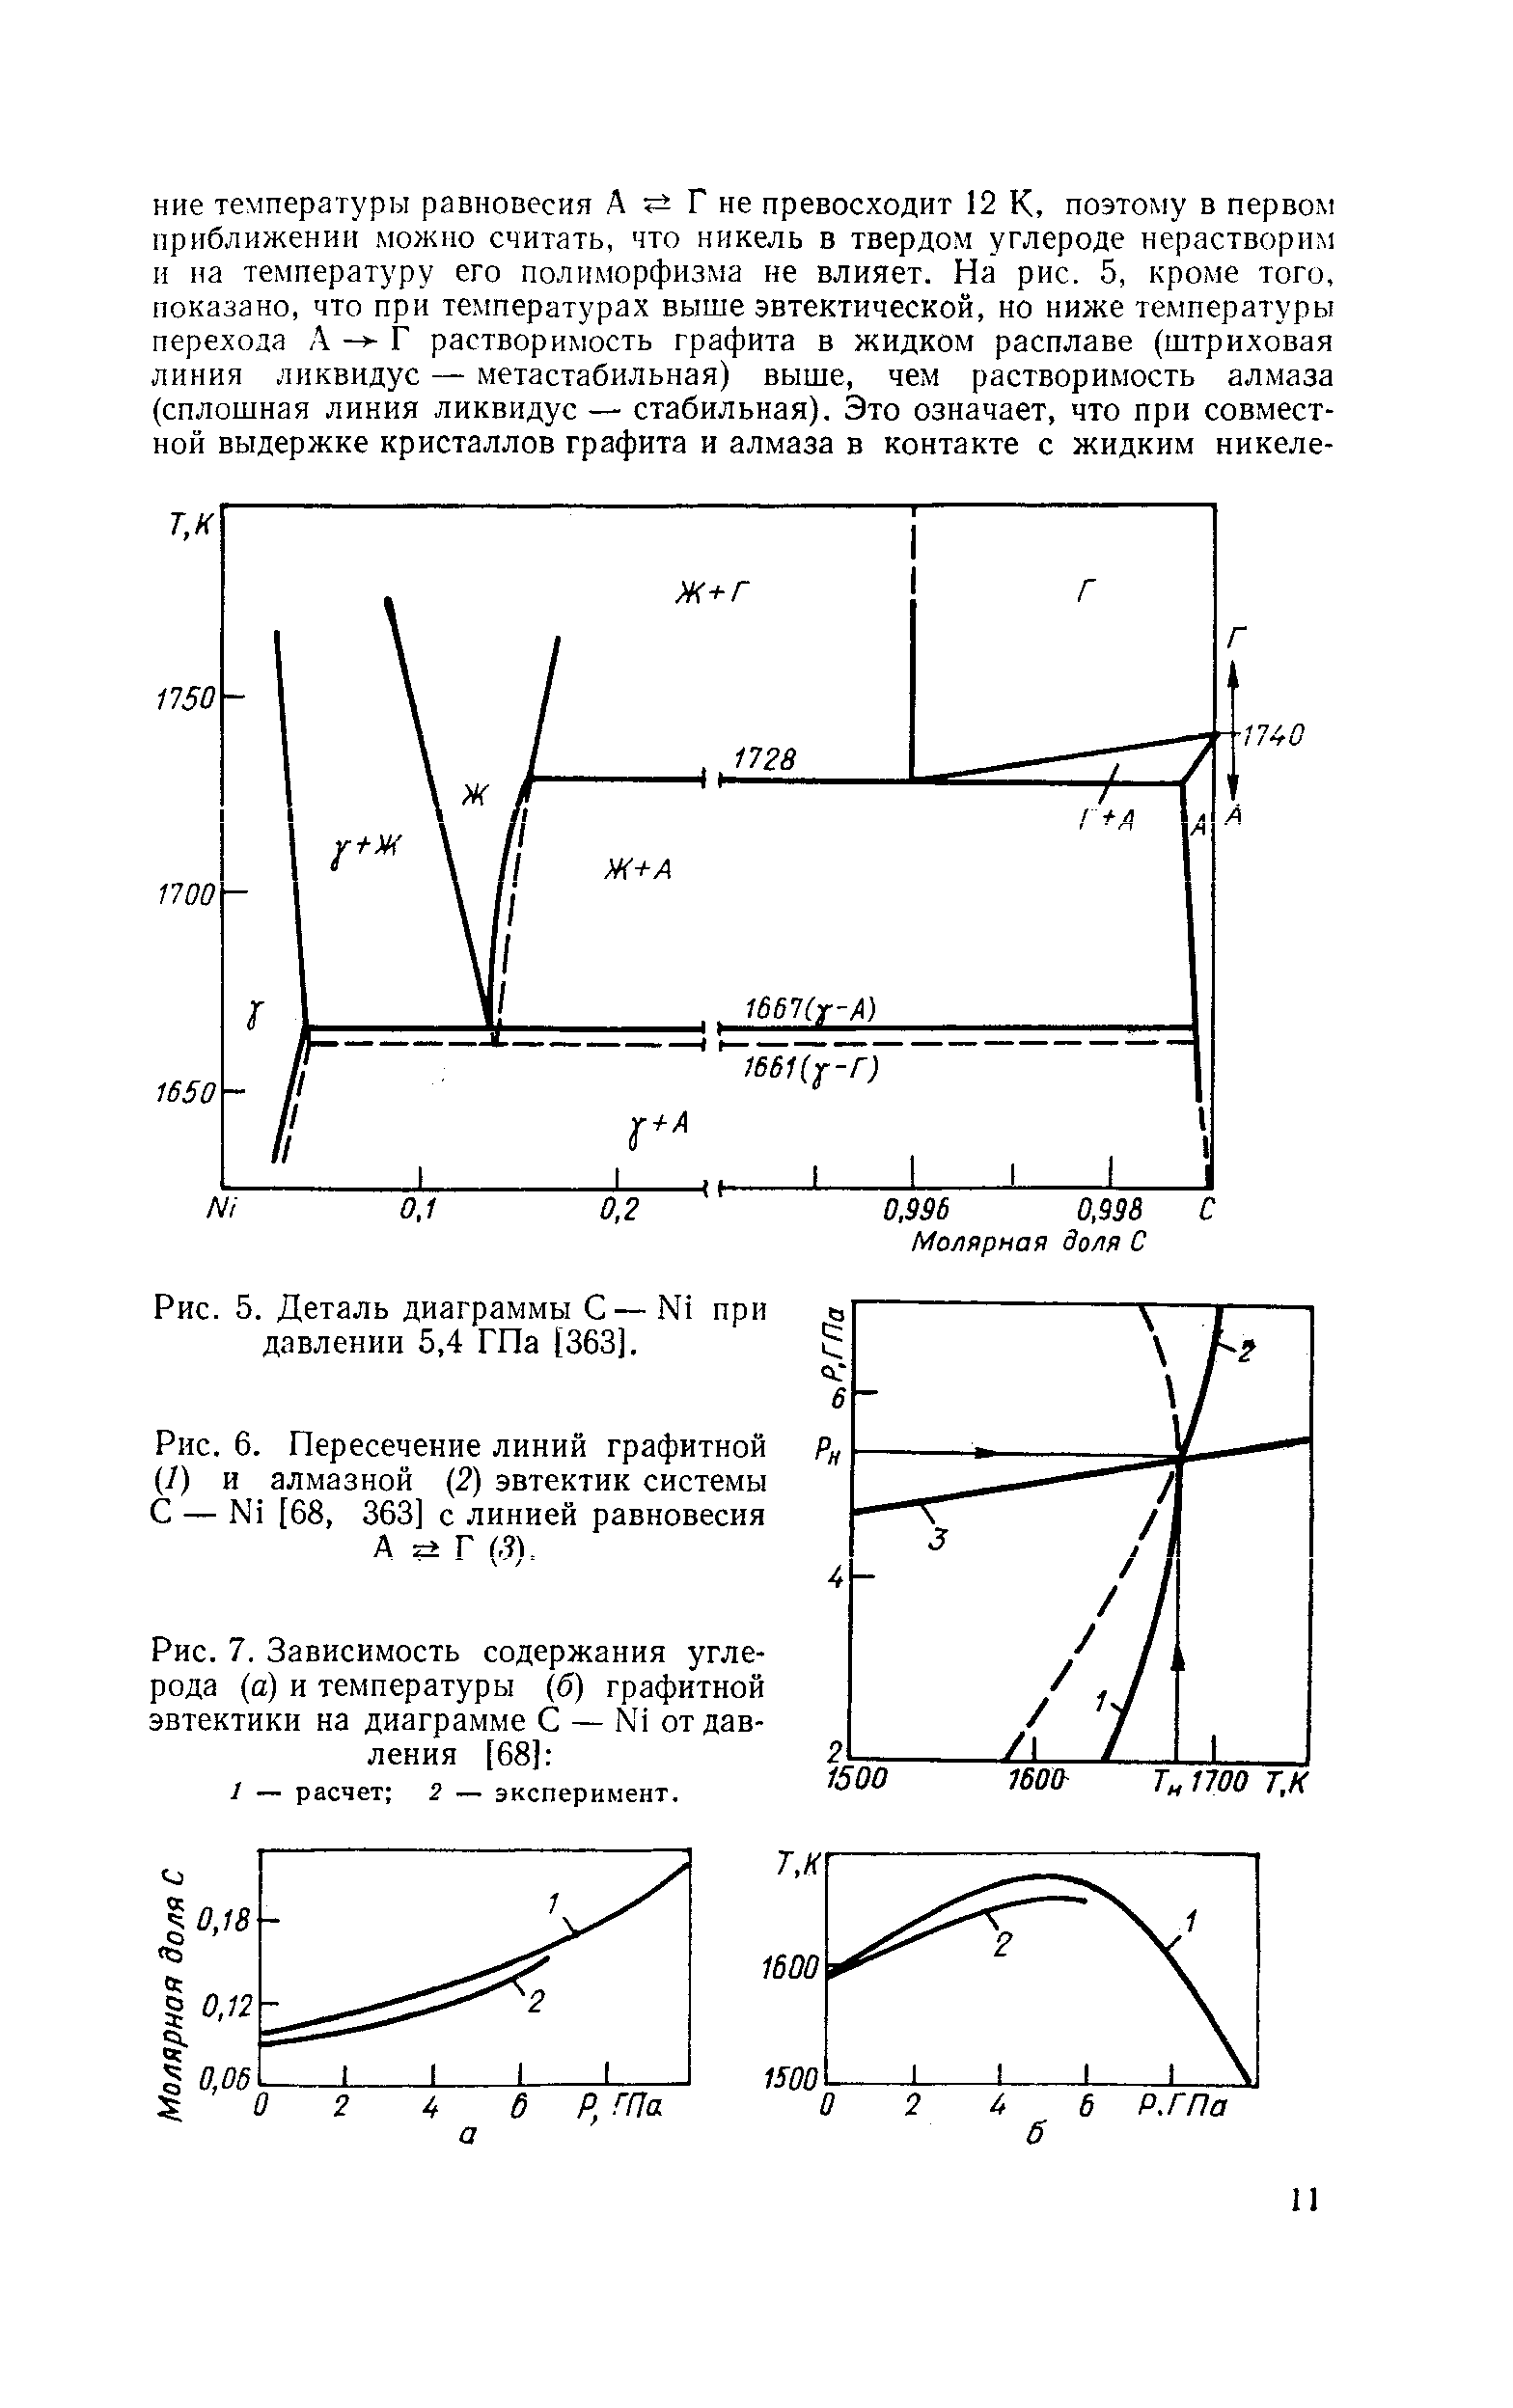 Пересечение линий графитной р (1) и алмазной (2) эвтектик системы С — N1 [68, 363] с линией равновесия А Г Ф.